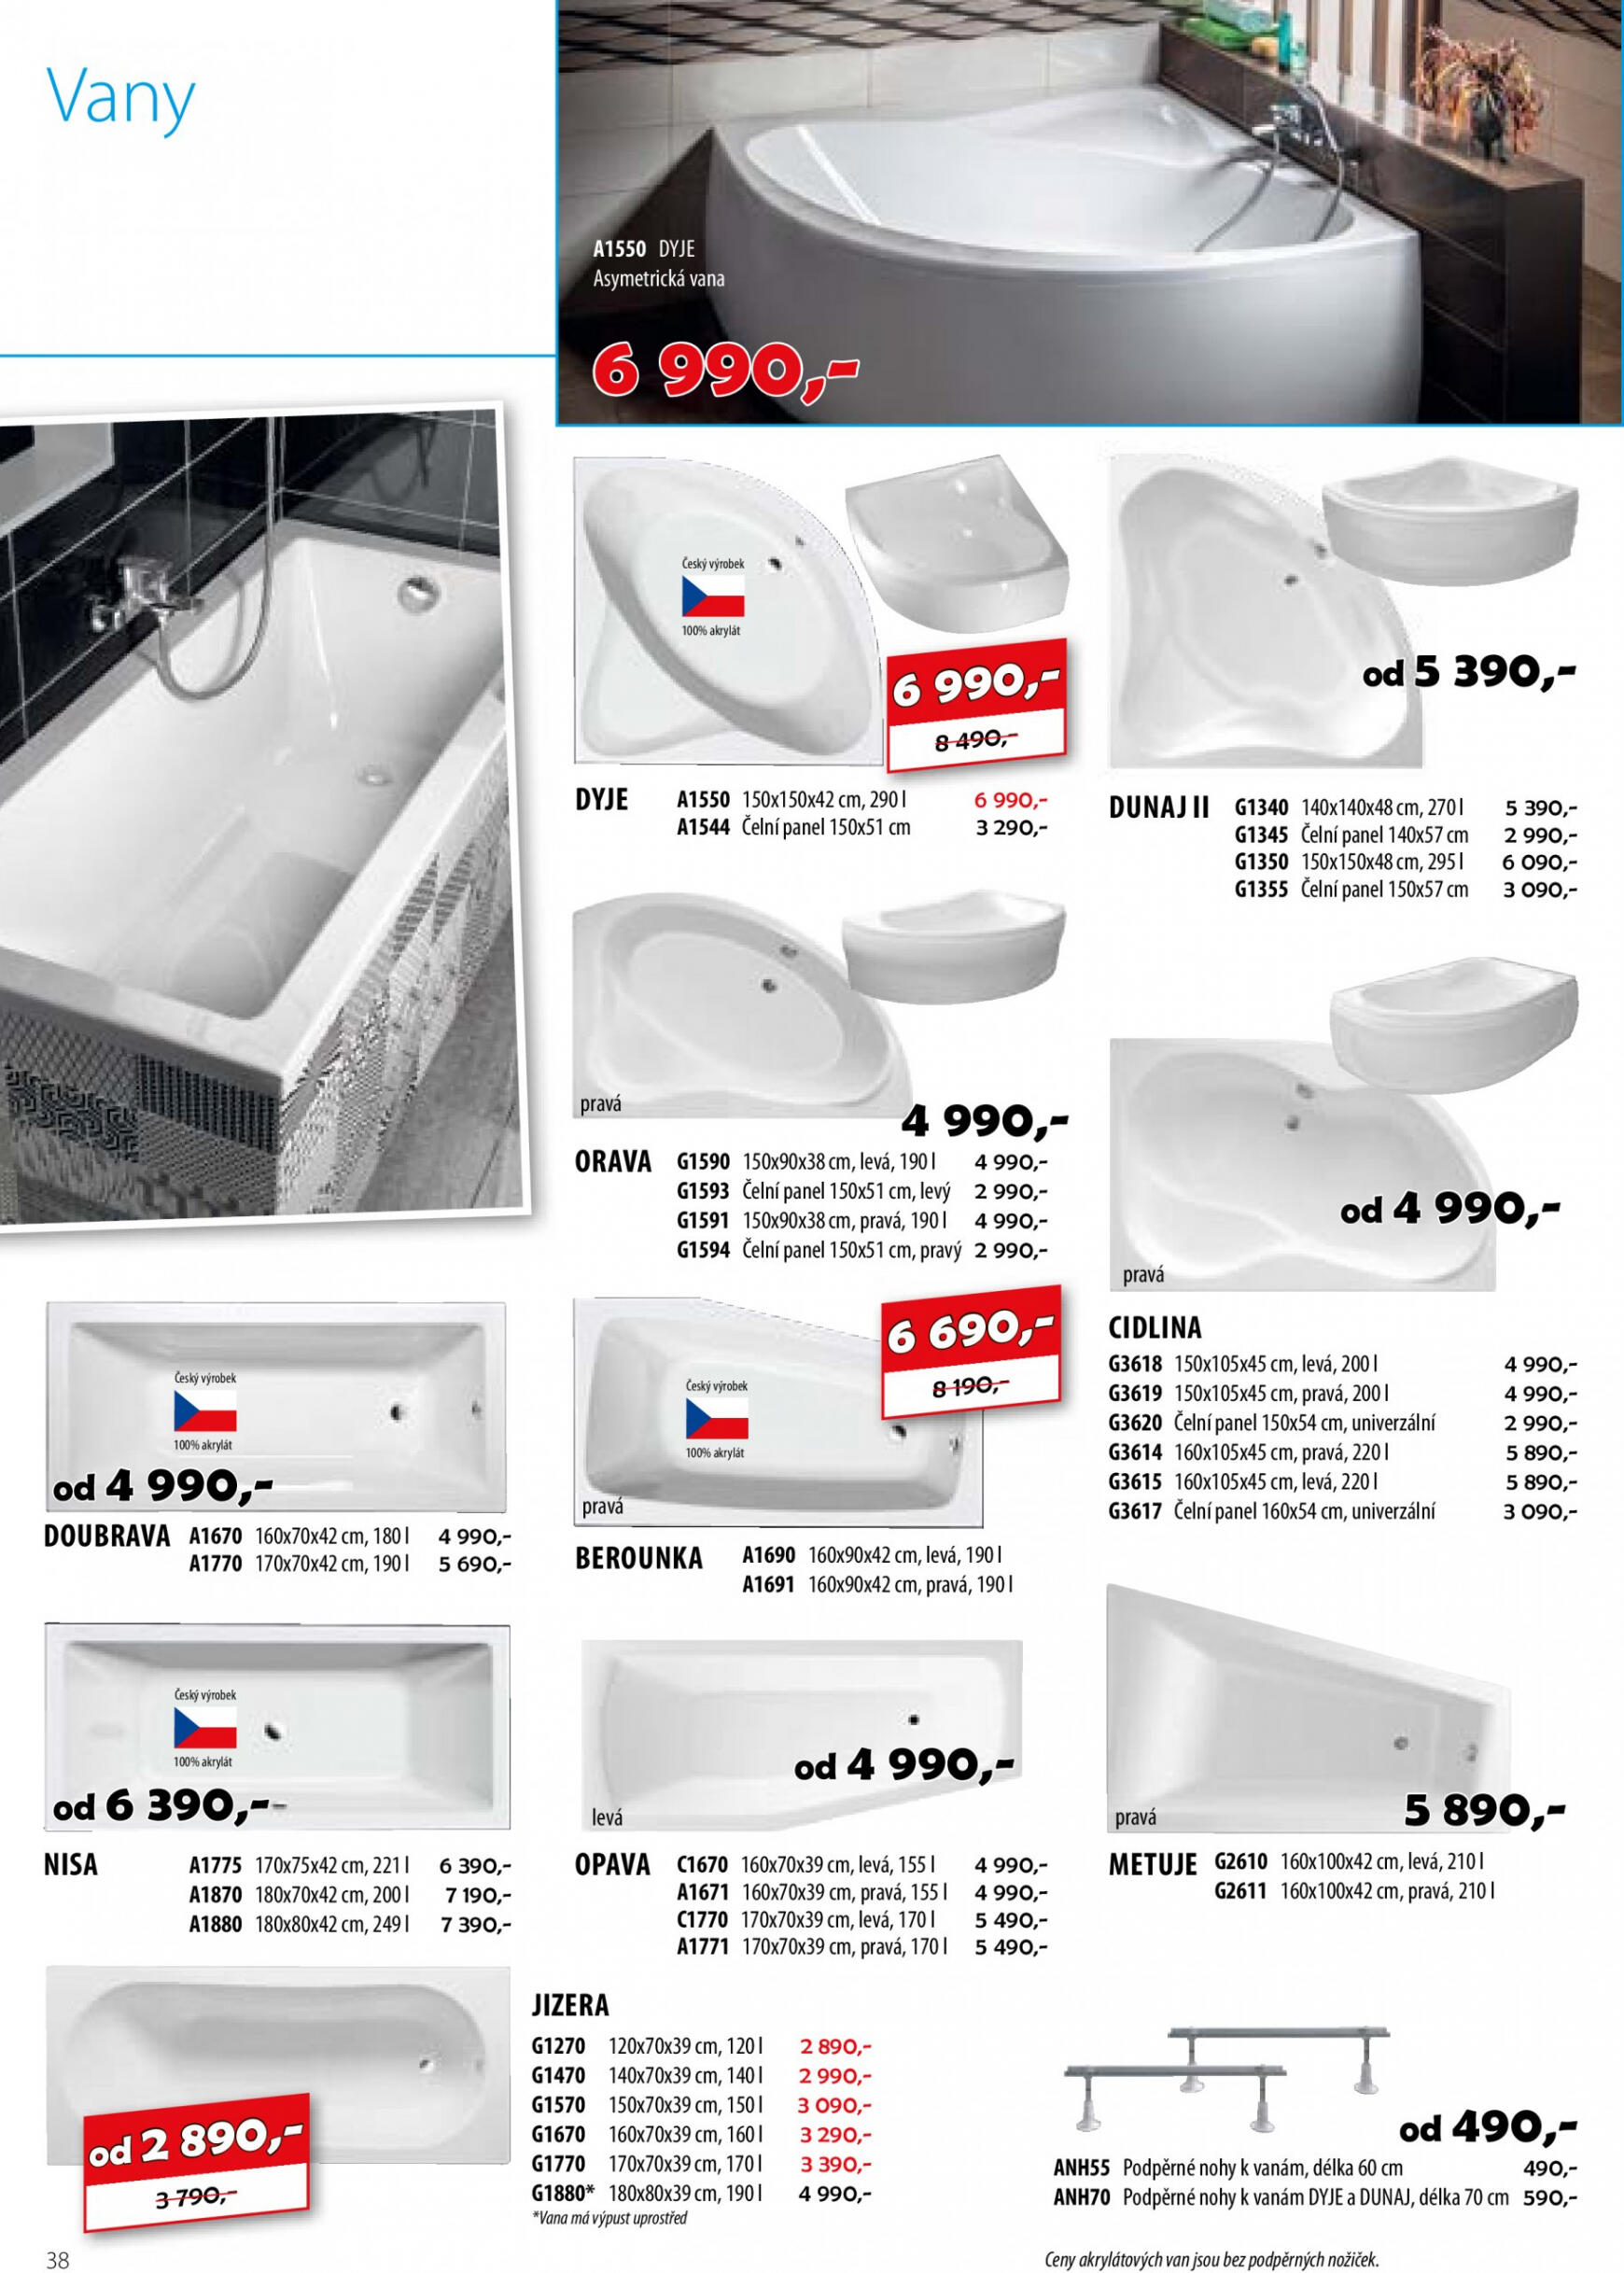 sapho-koupelny - Sapho koupelny platný od 01.05.2023 - page: 38